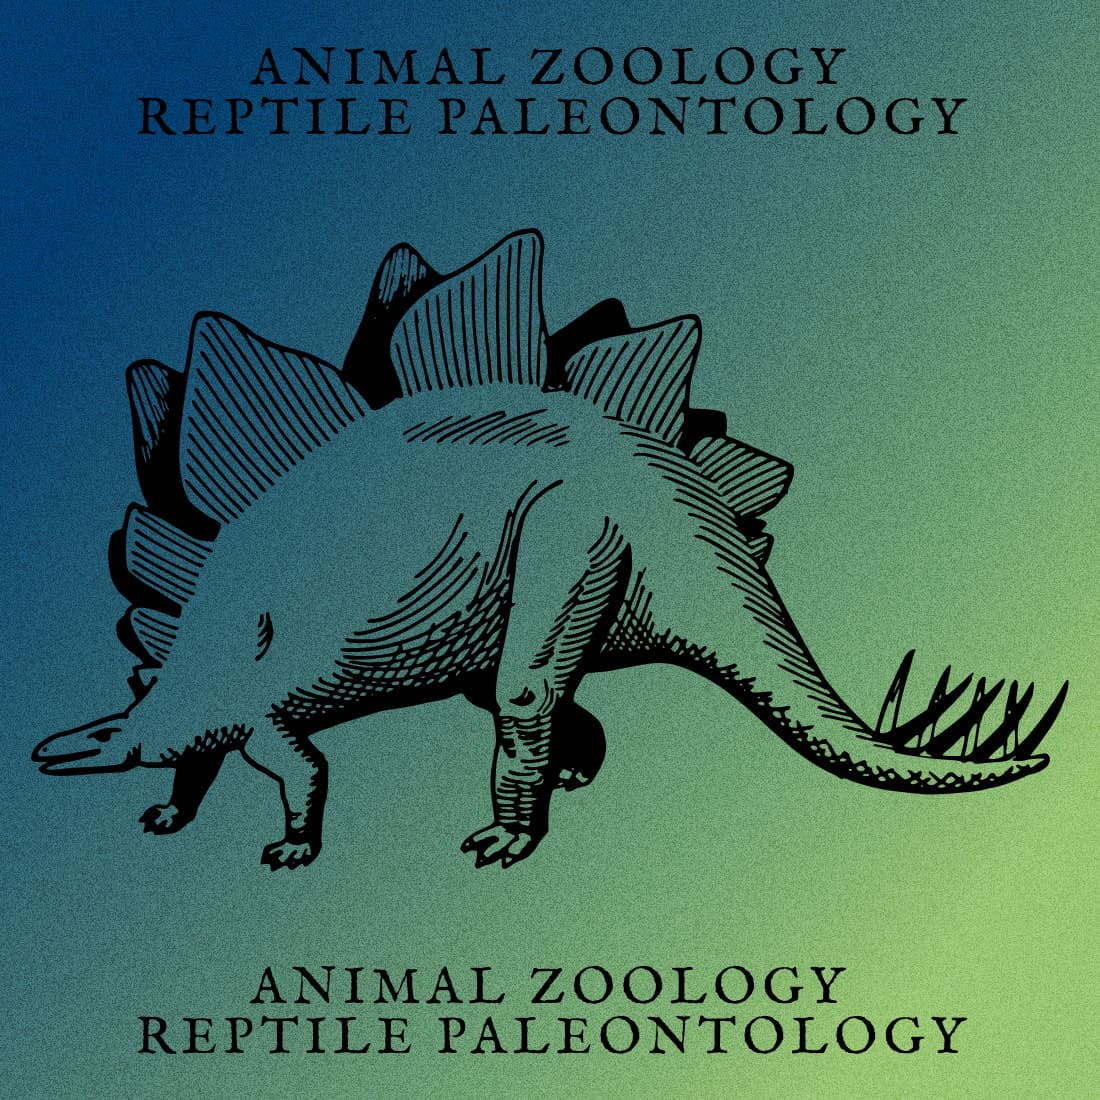 Animal Zoology Reptile Paleontology - Colorful Example.